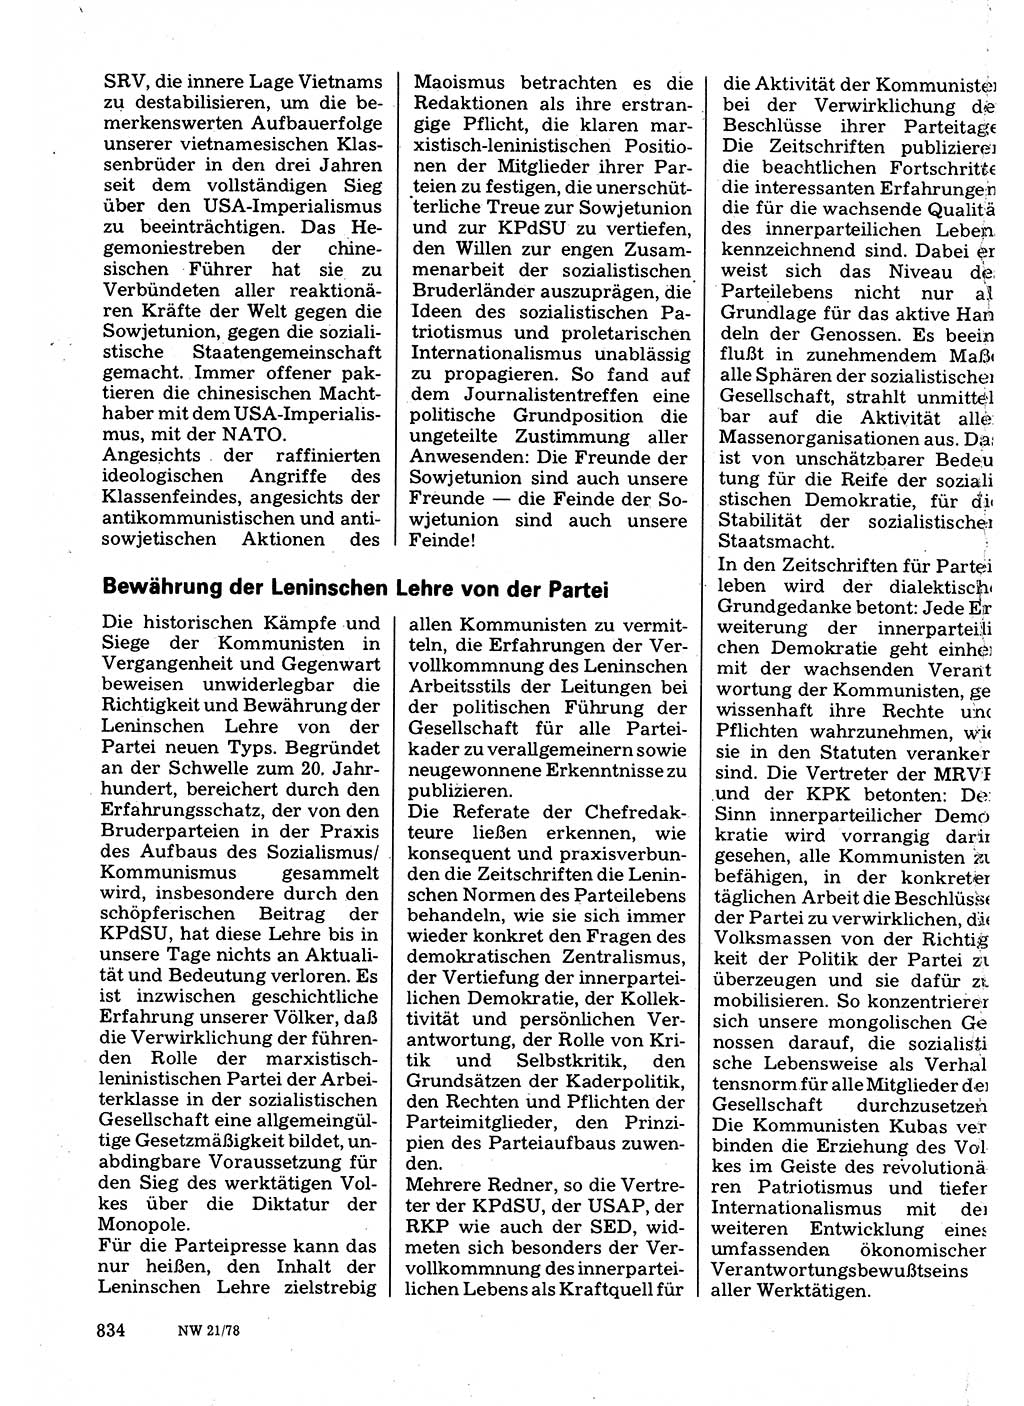 Neuer Weg (NW), Organ des Zentralkomitees (ZK) der SED (Sozialistische Einheitspartei Deutschlands) für Fragen des Parteilebens, 33. Jahrgang [Deutsche Demokratische Republik (DDR)] 1978, Seite 834 (NW ZK SED DDR 1978, S. 834)